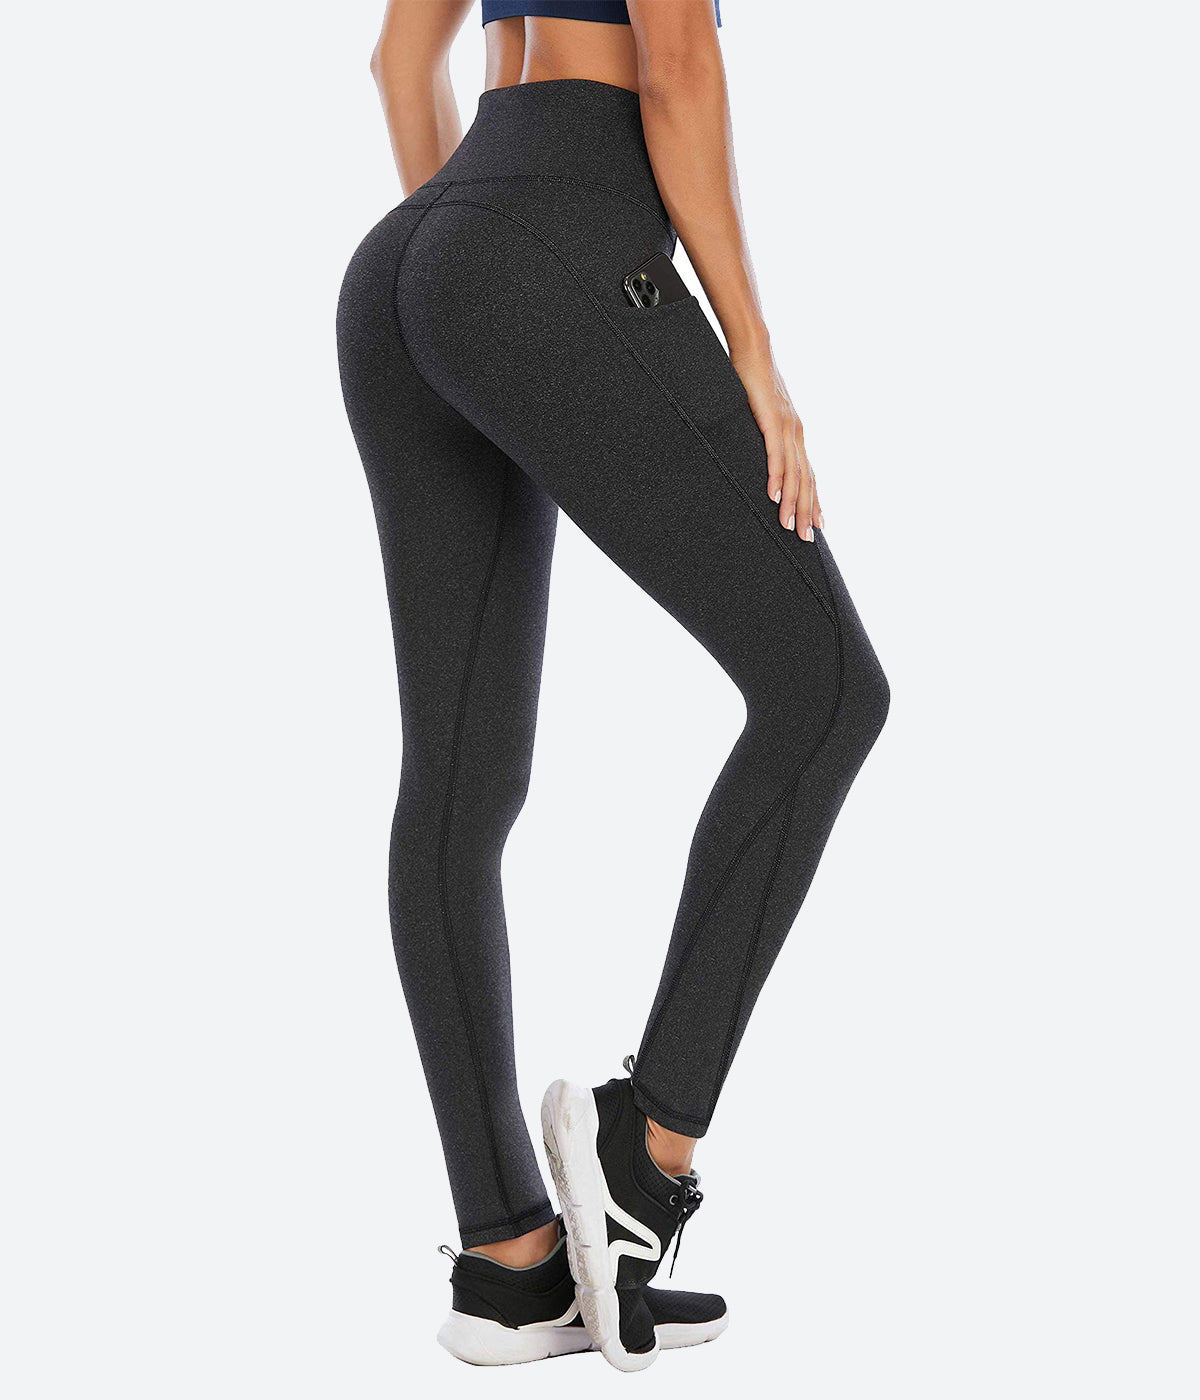 Heathyoga Leggings Black Size XS - $8 - From Jillian